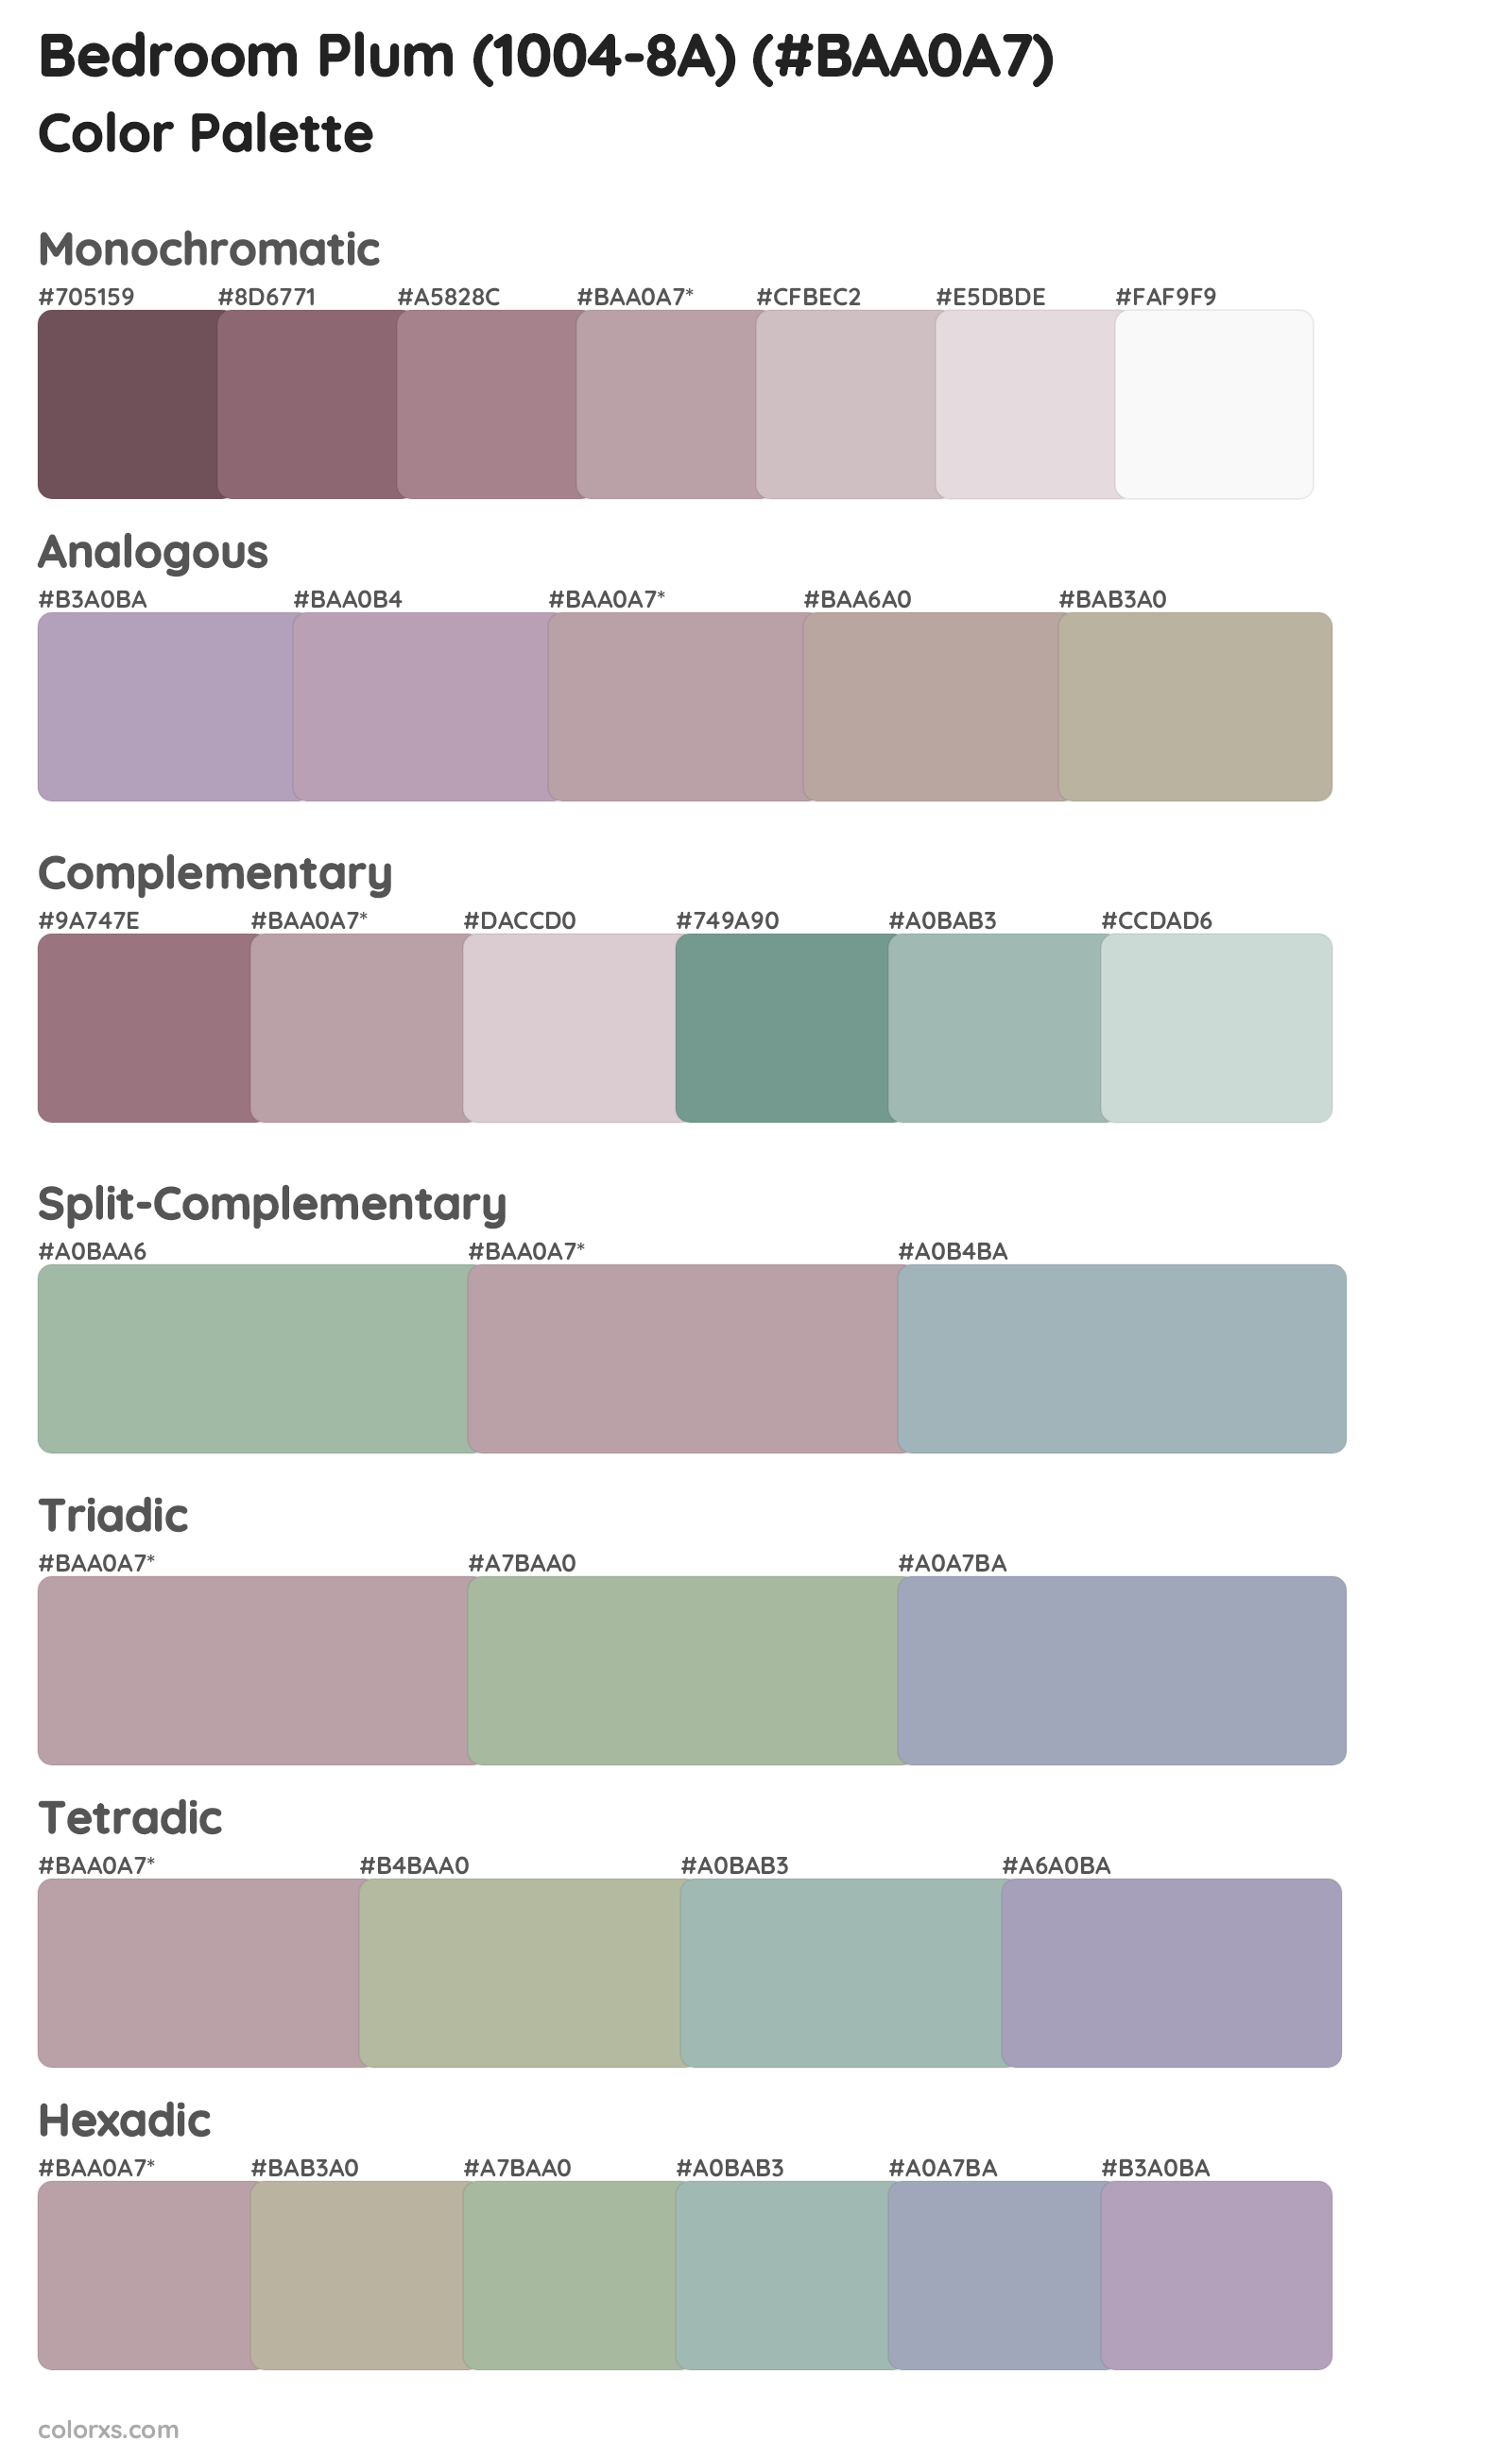 Bedroom Plum (1004-8A) Color Scheme Palettes